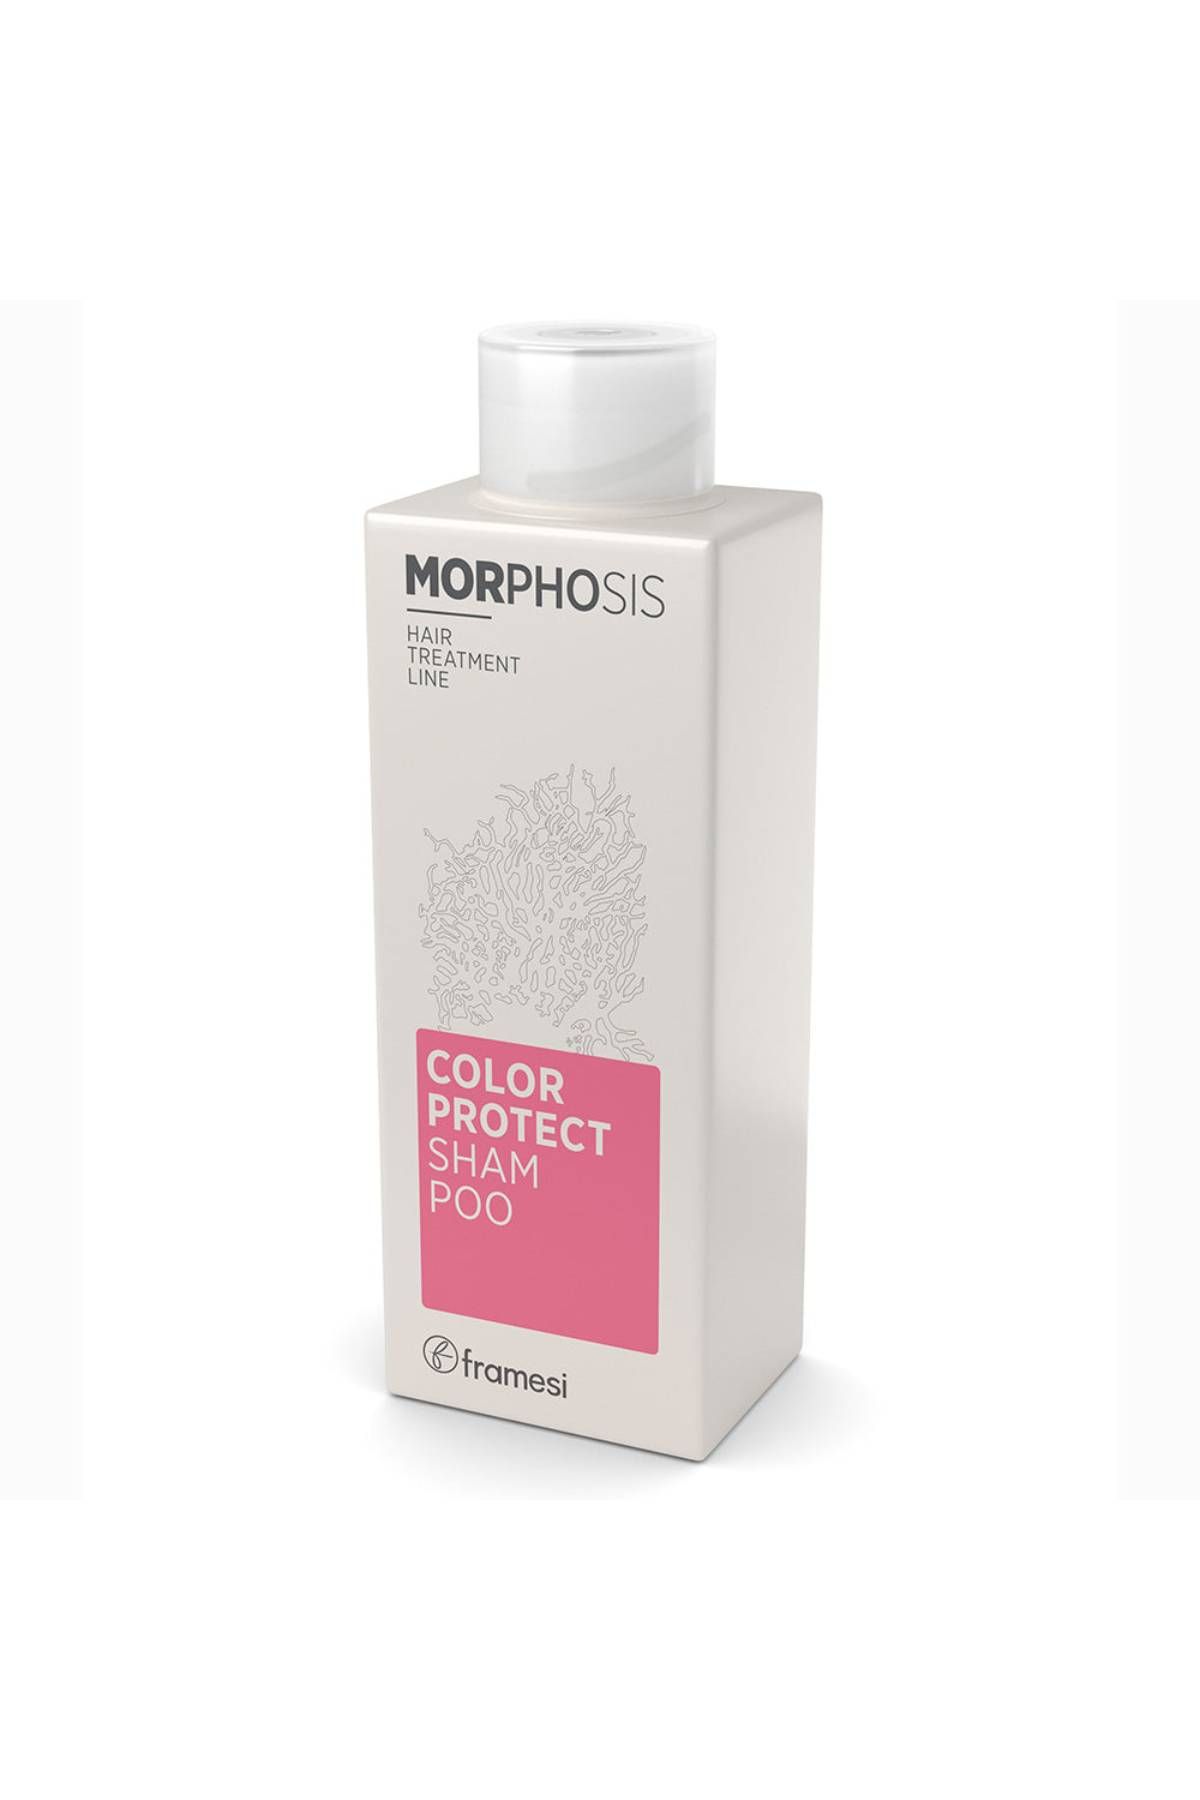 Framesi - Morphosis Color Protect Shampoo 250 ml